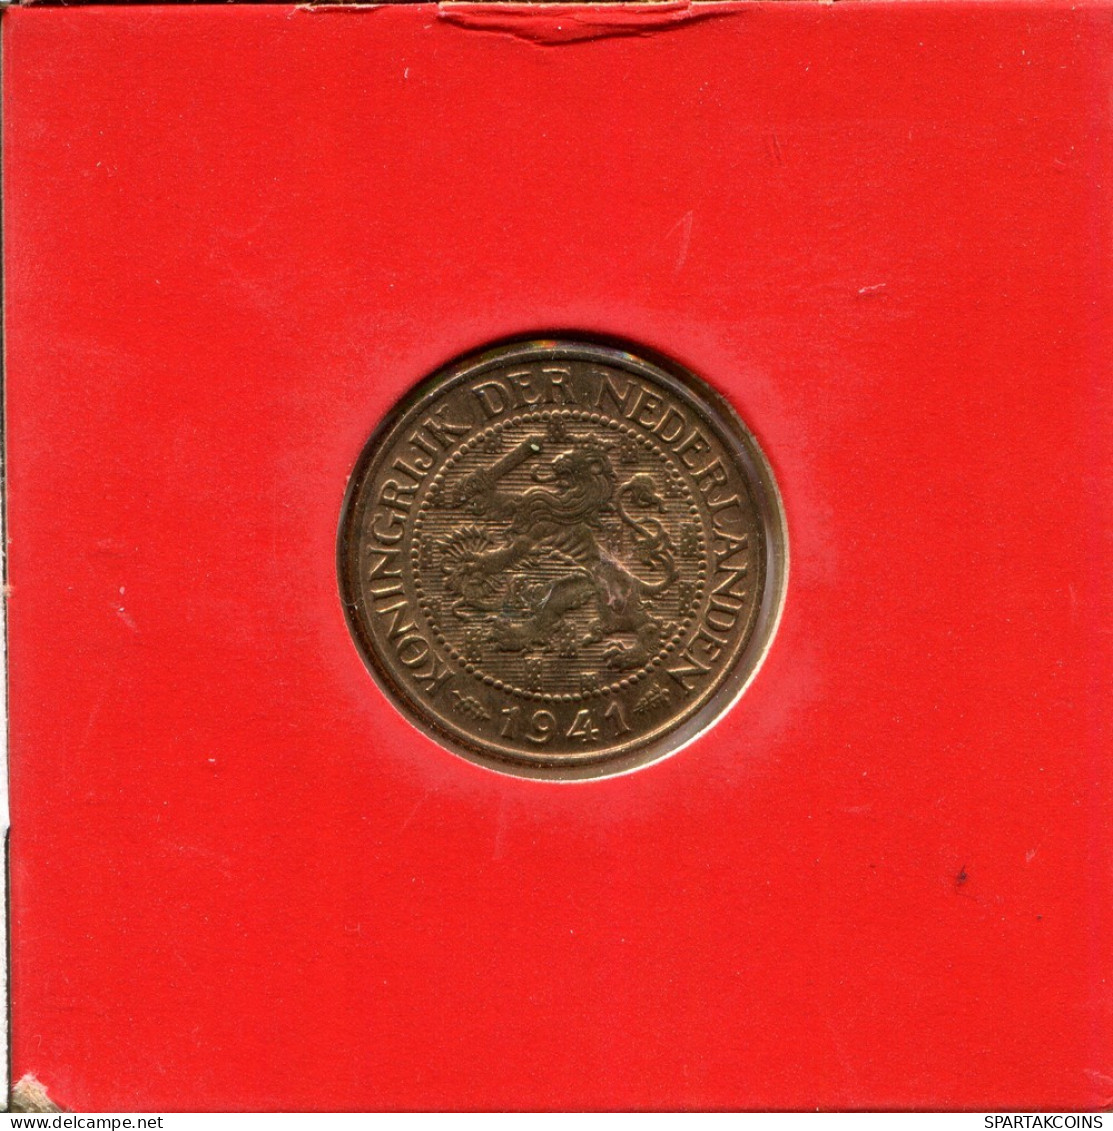 1 CENT 1941 NEERLANDÉS NETHERLANDS Moneda #AU563.E.A - 1 Cent